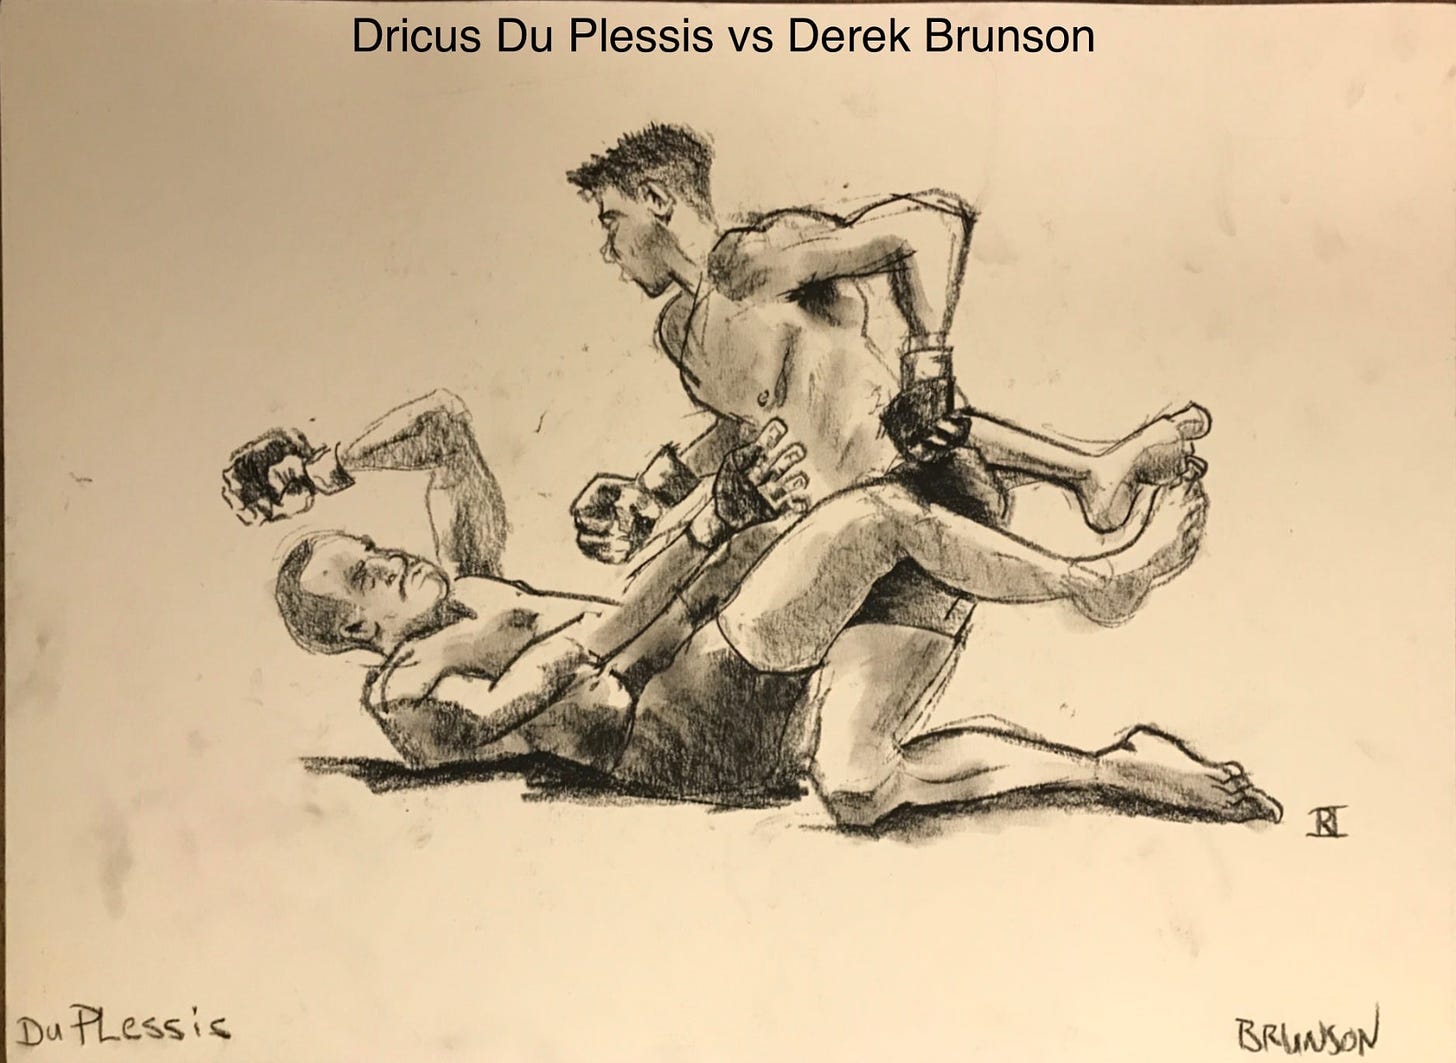 Dricus Du Plessis vs Derek Brunson by Chris Rini